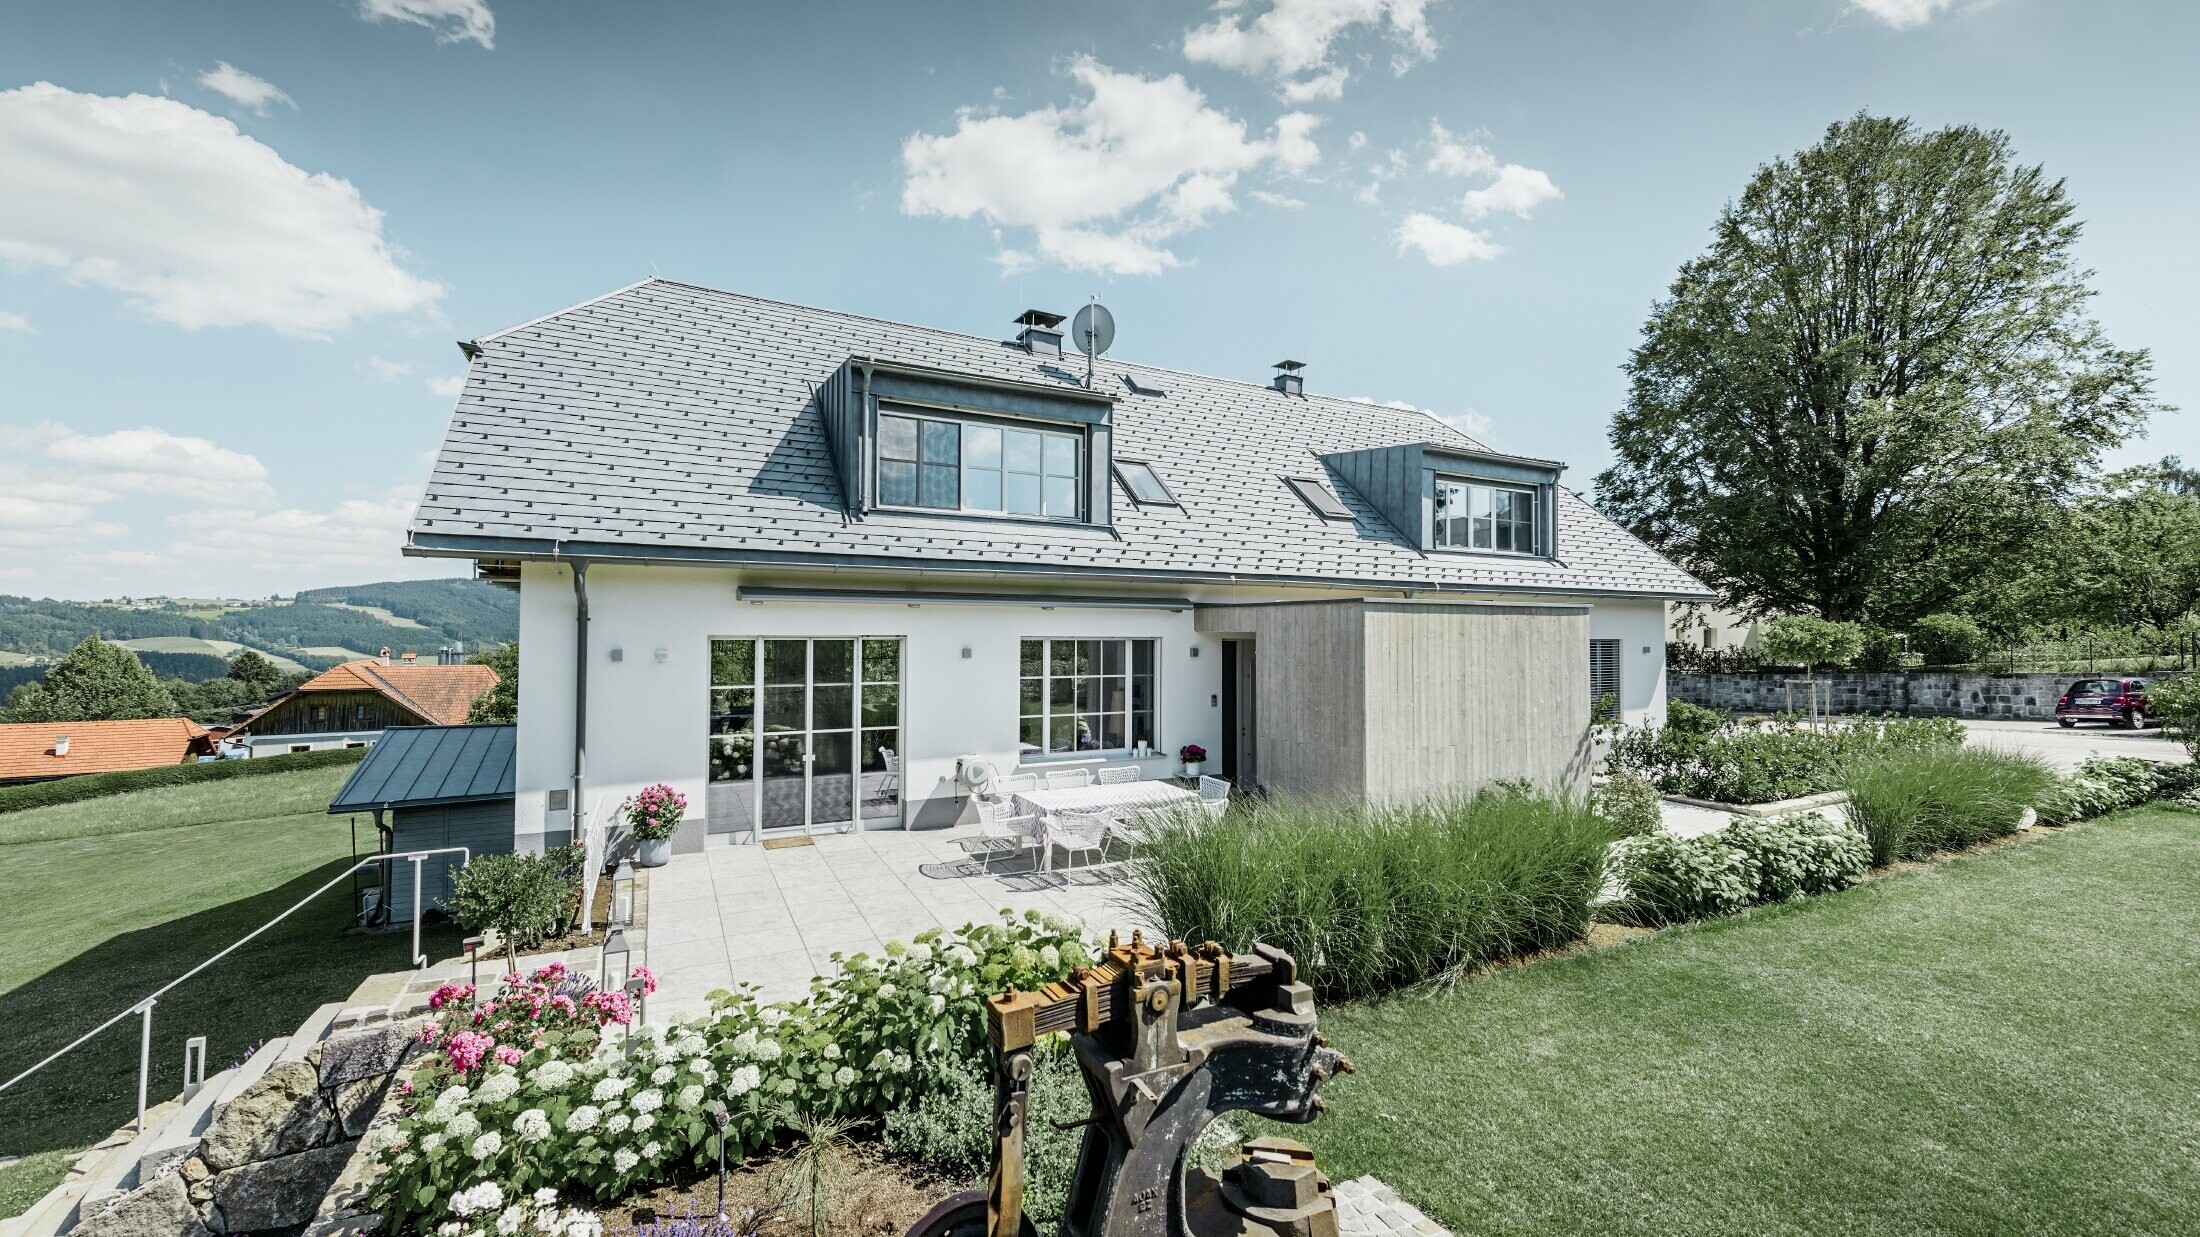 Klassisk enebolig med halvvalmtak – Huset med takrenovering med PREFA-takshingel i steingrå med vakkert opparbeidet hage og romslig terrasse.